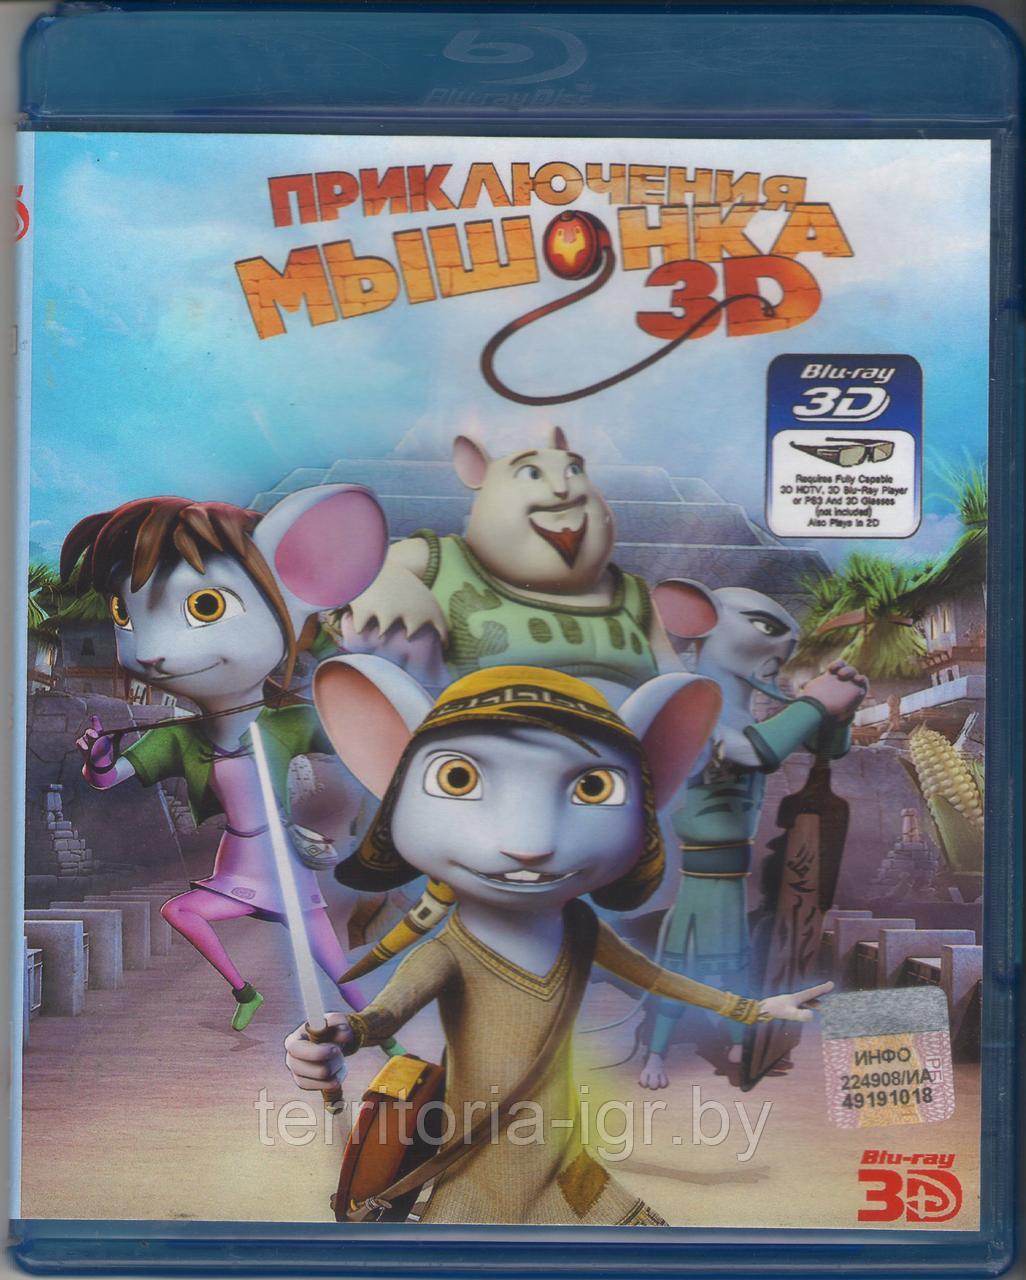 Приключения мышонка (25 GB)